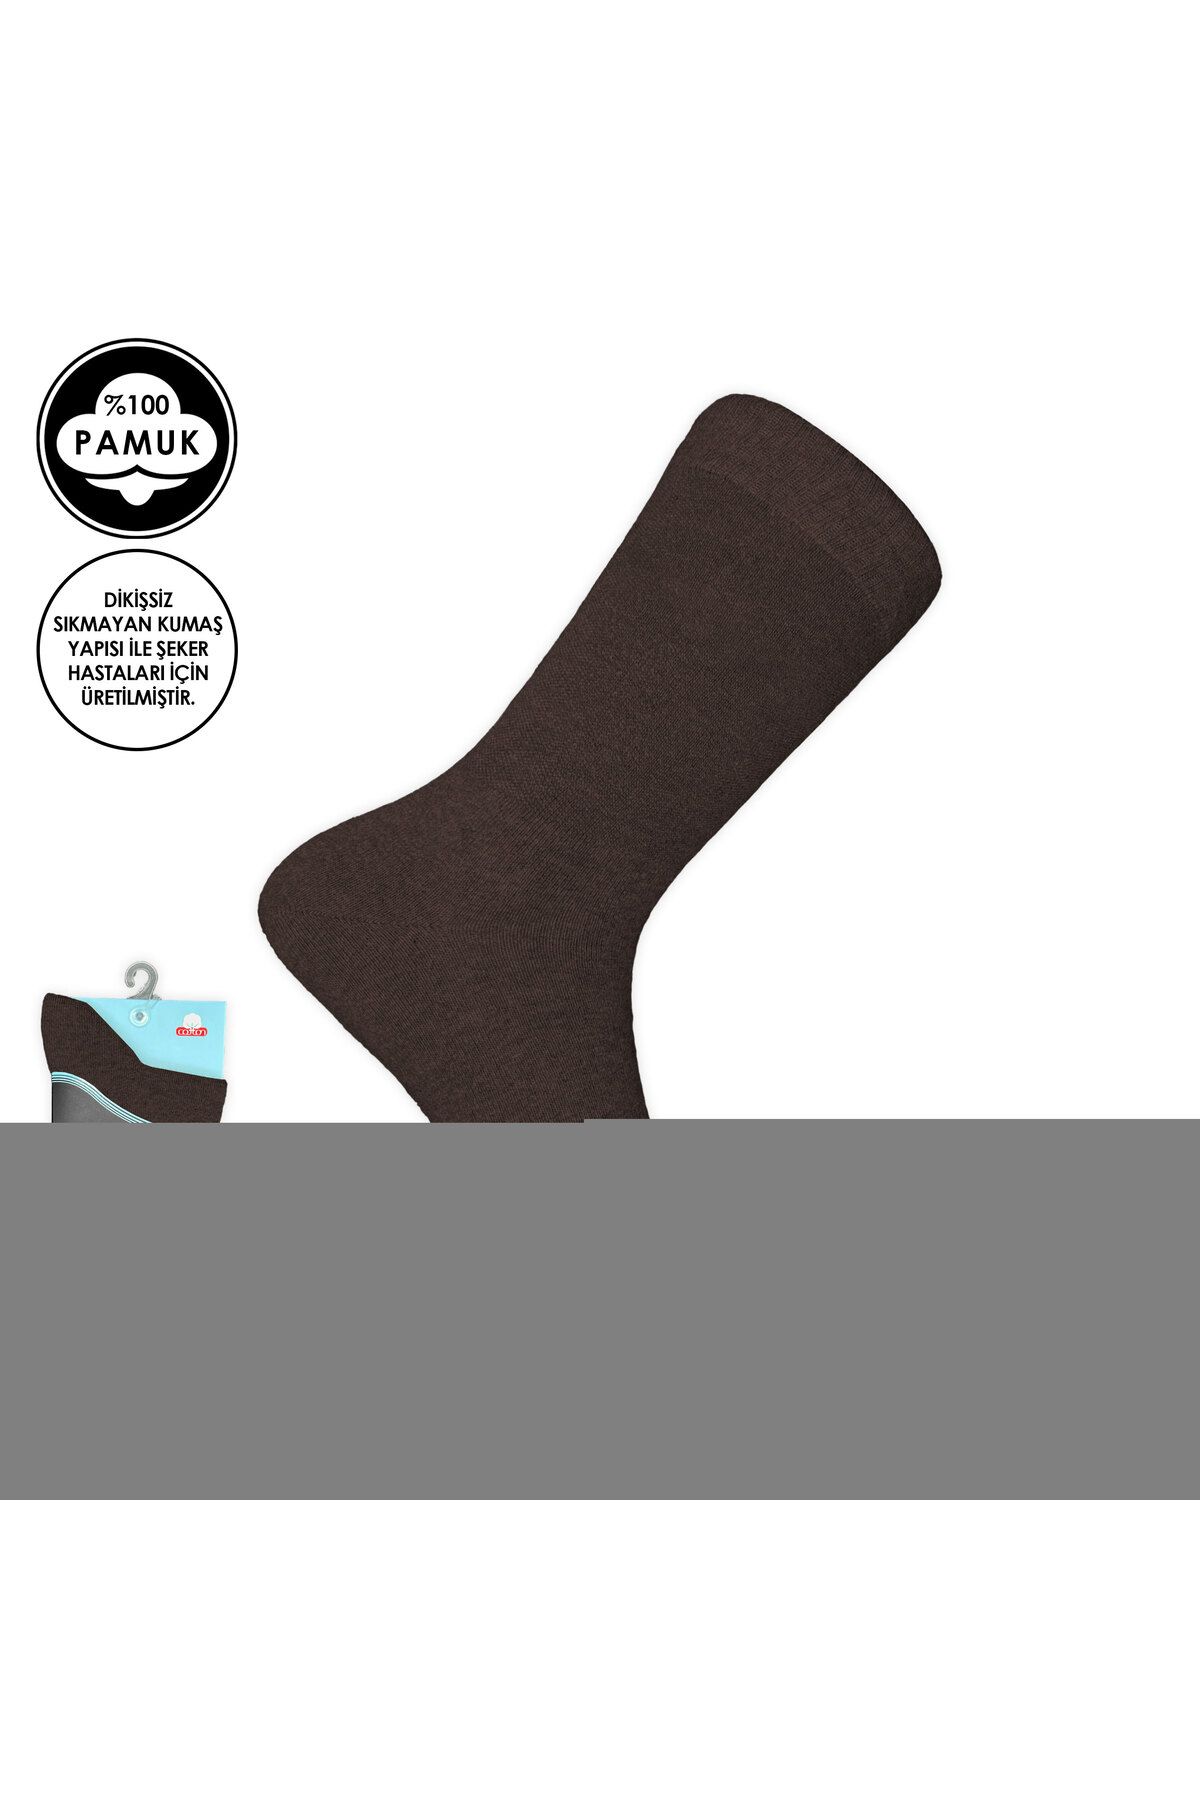 AtikCamp Pro Çorap Şeker (Diyabetik) Sıkmayan Pamuk Erkek Çorabı Kahve (16408-R2)